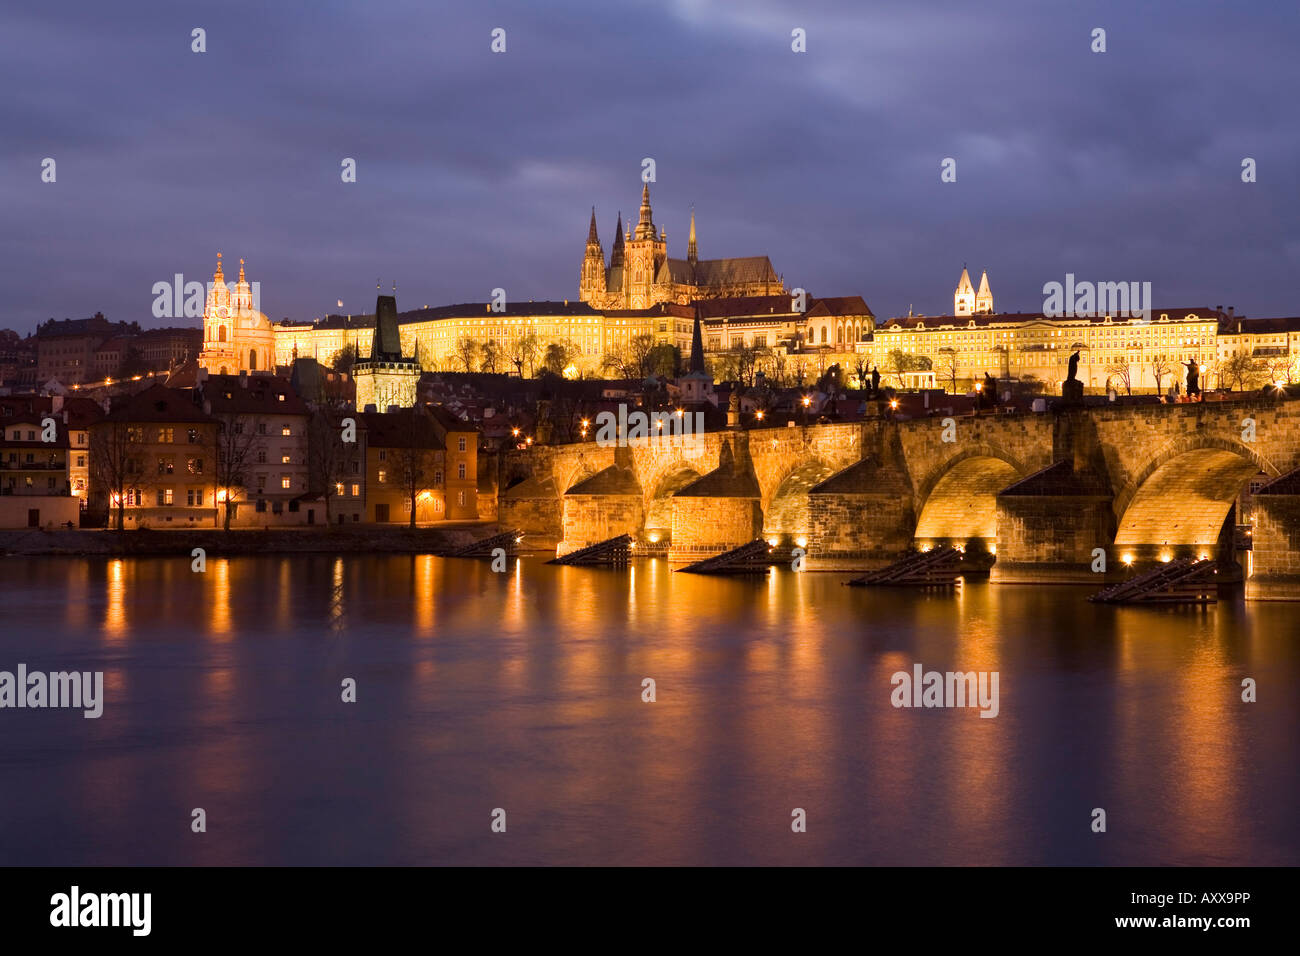 La Cathédrale Saint-Guy, le Pont Charles et le quartier du château illuminé la nuit en hiver, Prague, République Tchèque Banque D'Images